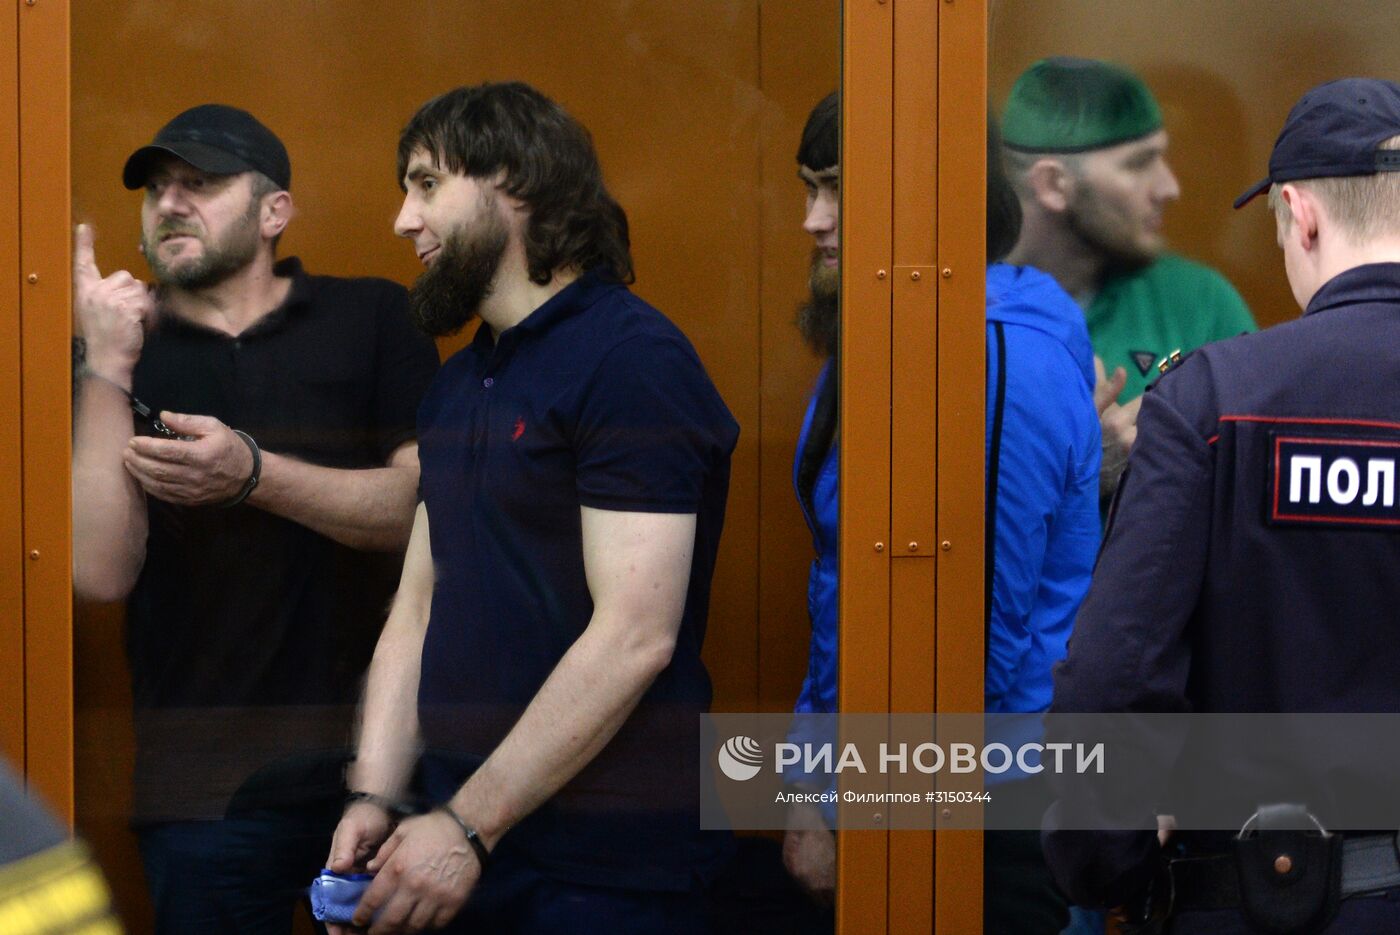 Оглашение приговора обвиняемым в убийстве Бориса Немцова